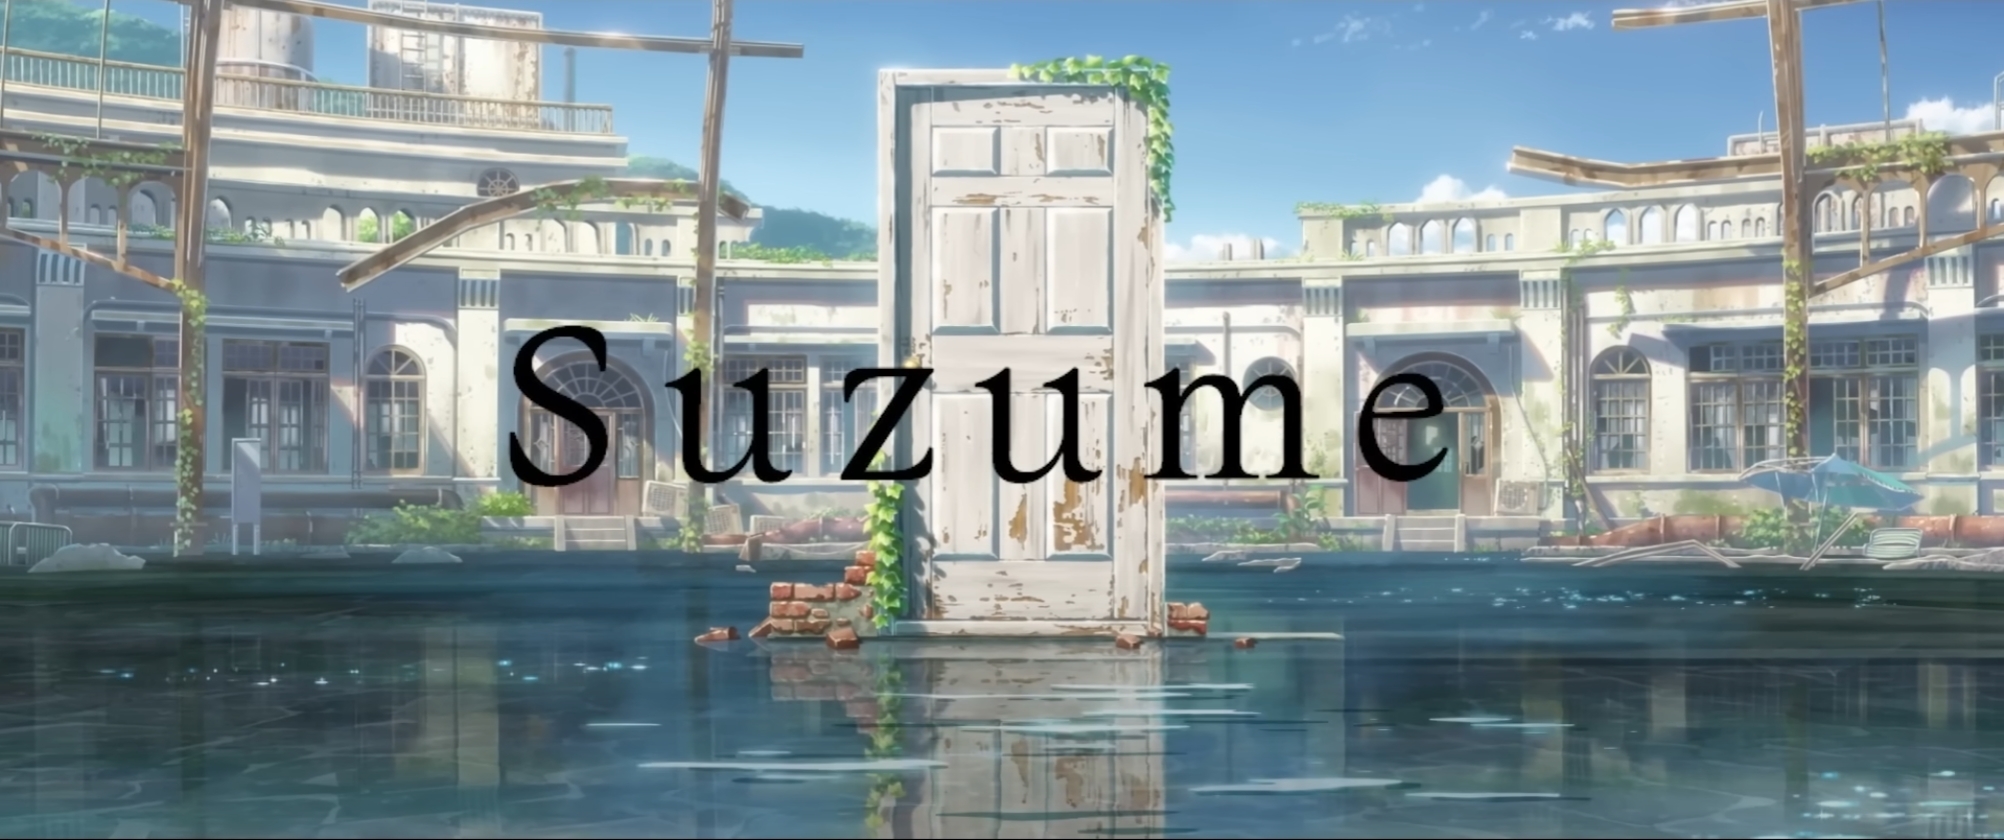 すずめの戸締まり、海外タイトルは「suzume」